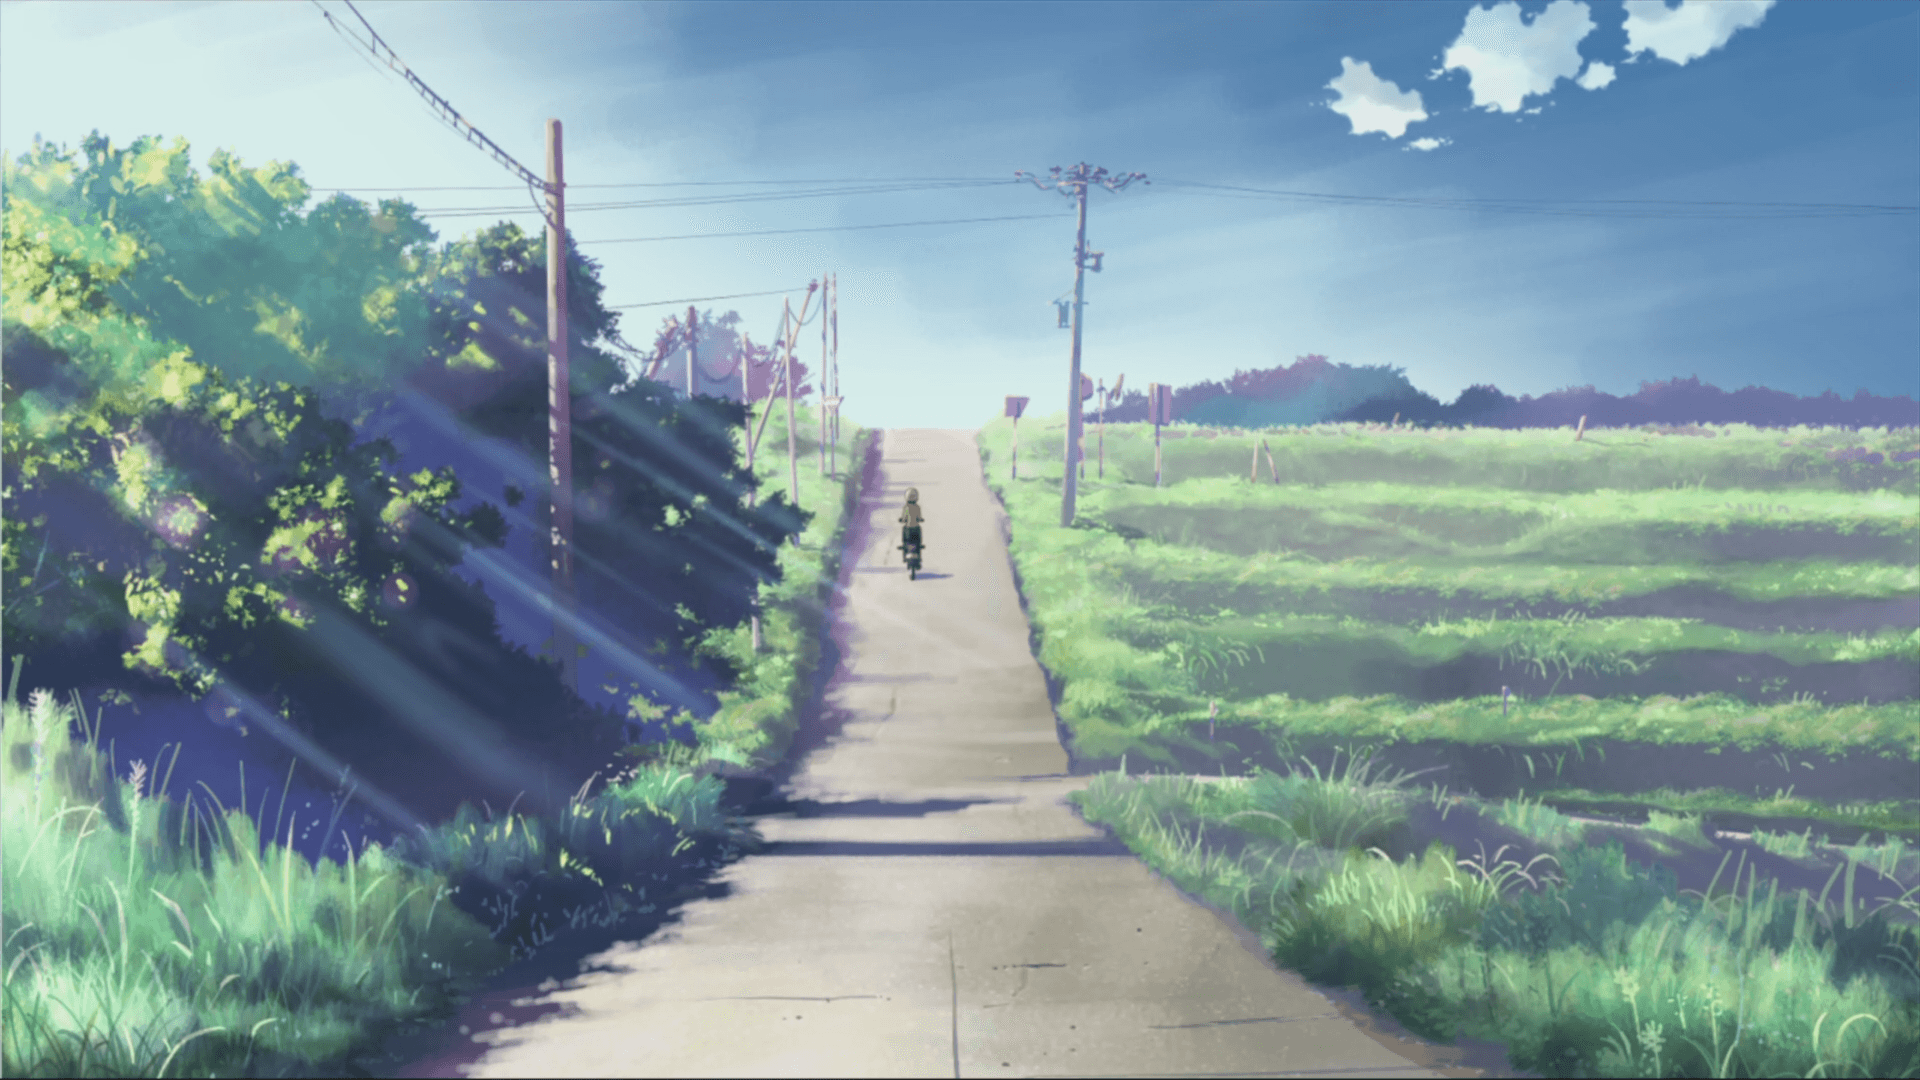 Caption: Makoto Shinkai Inspired Landscape Art